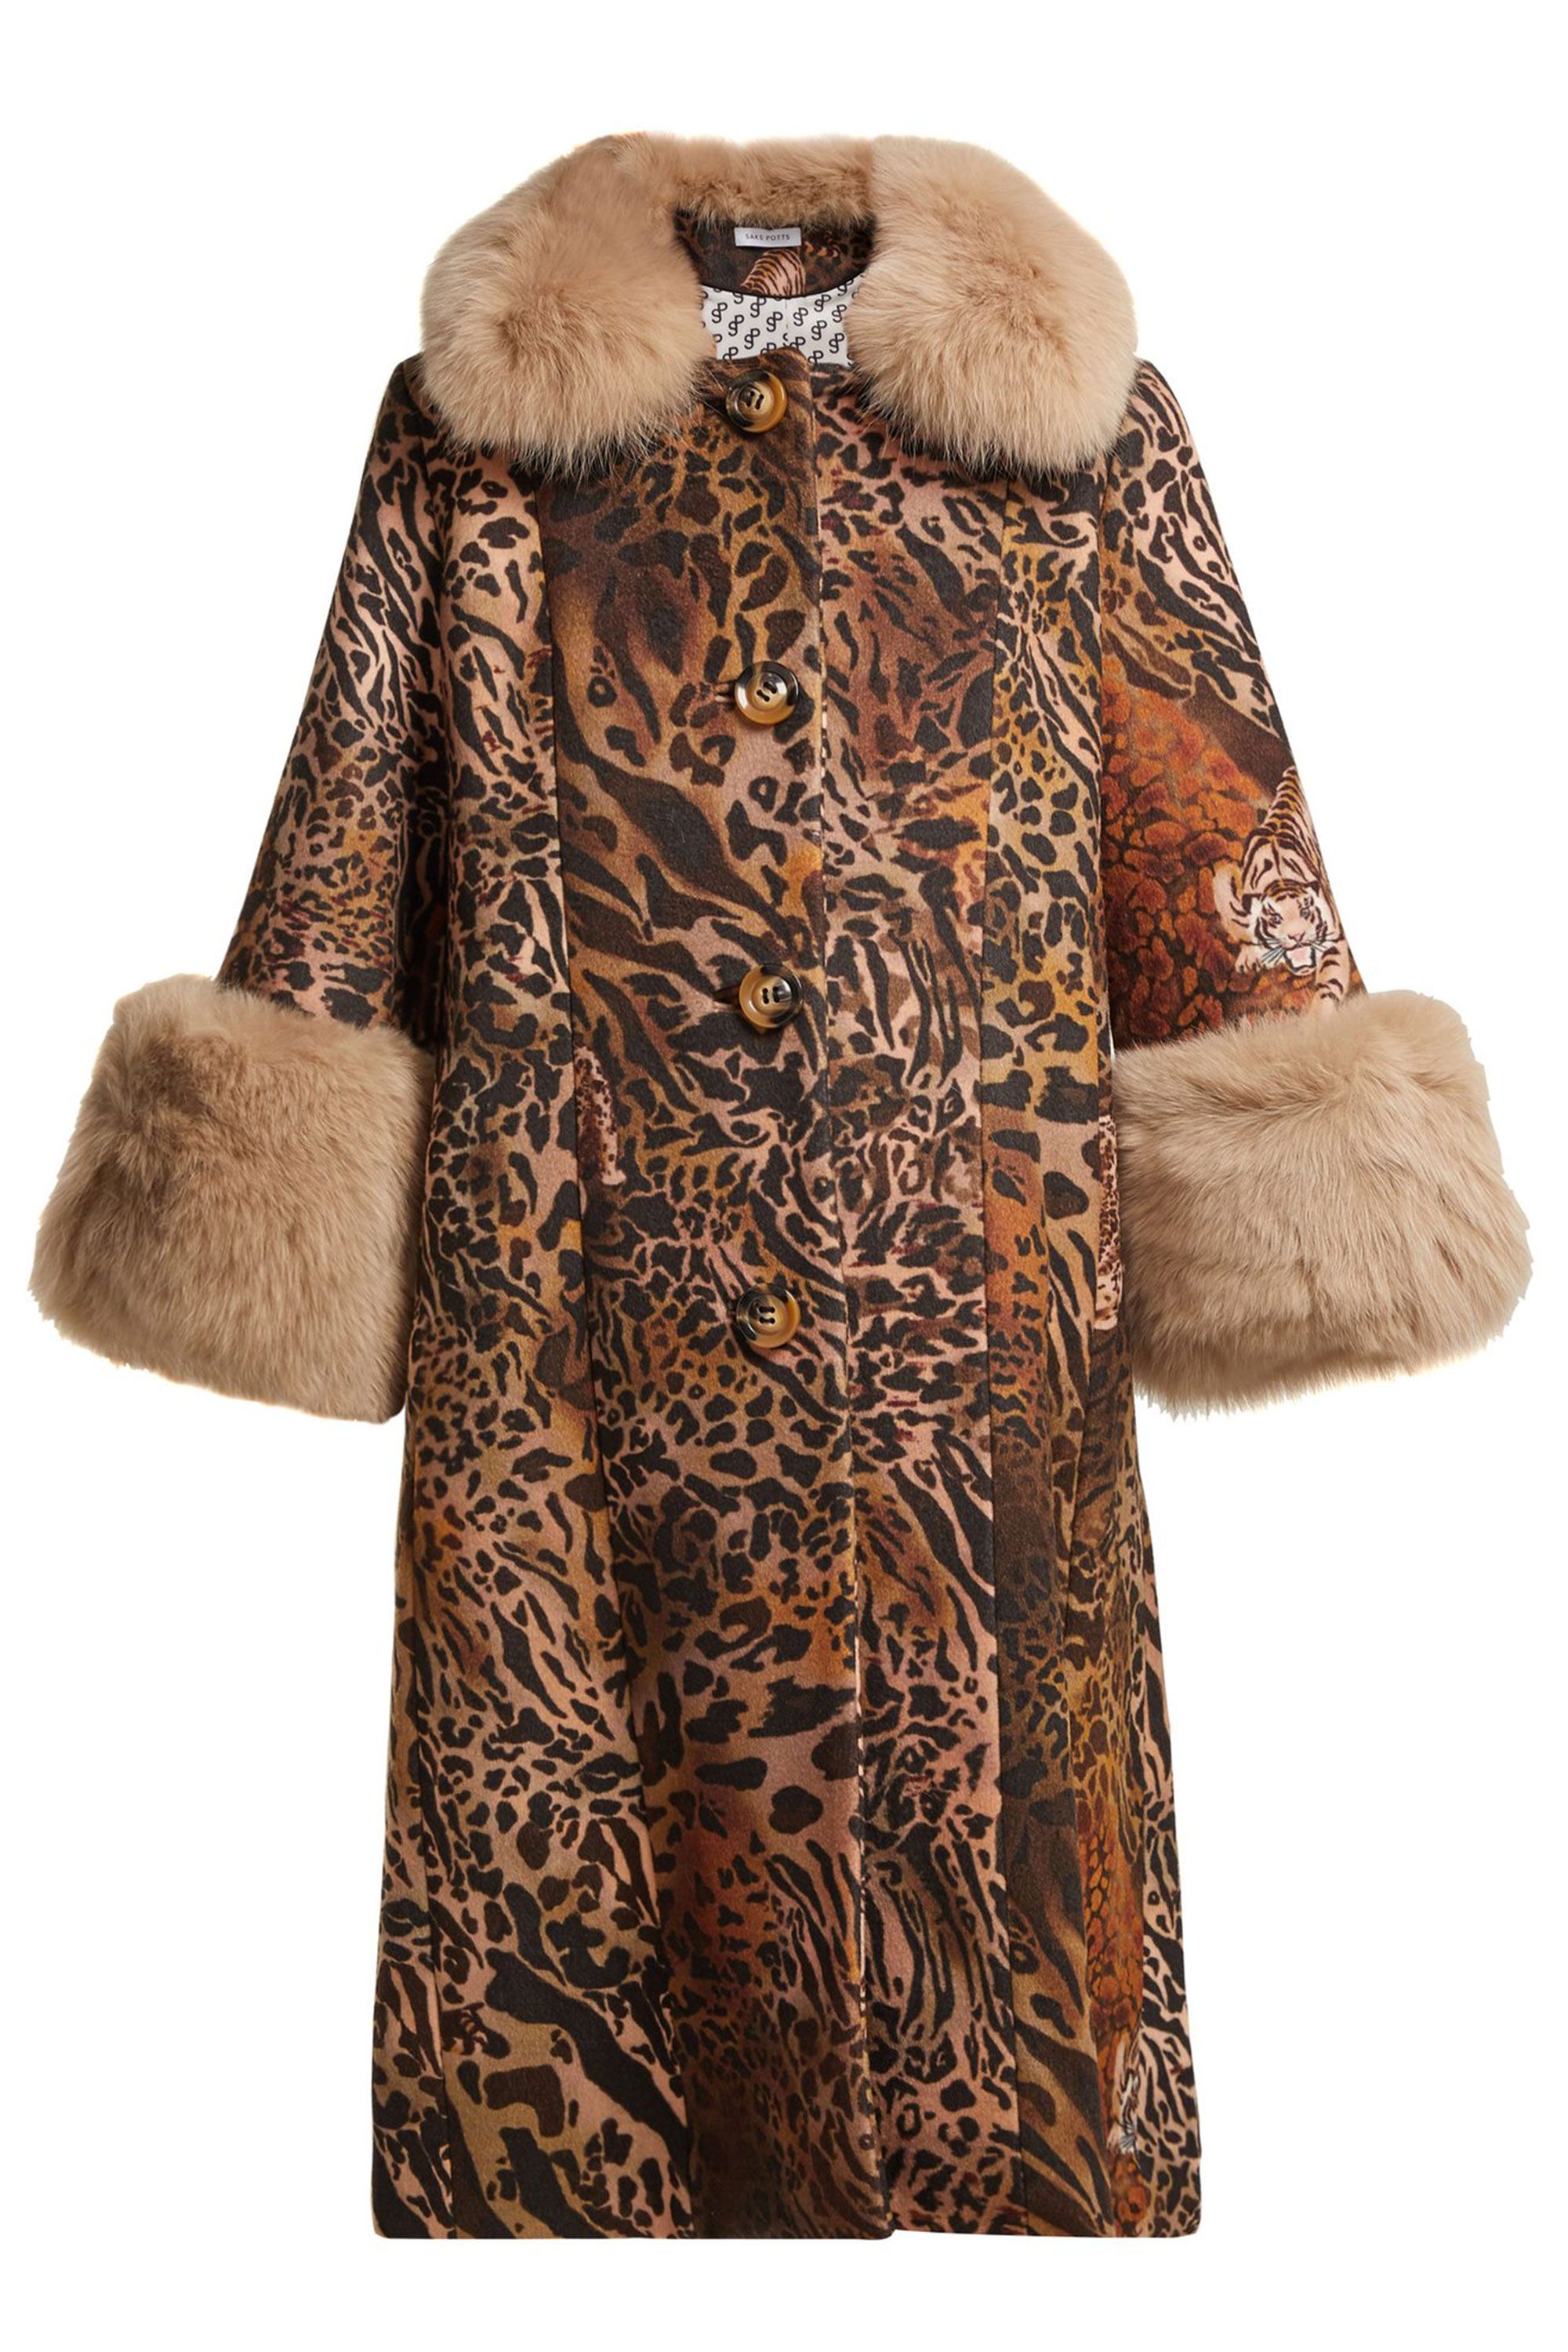 Real Fur Coat Cost - Fur Fox Coat Silver Real Gray Precious Coats Furs ...